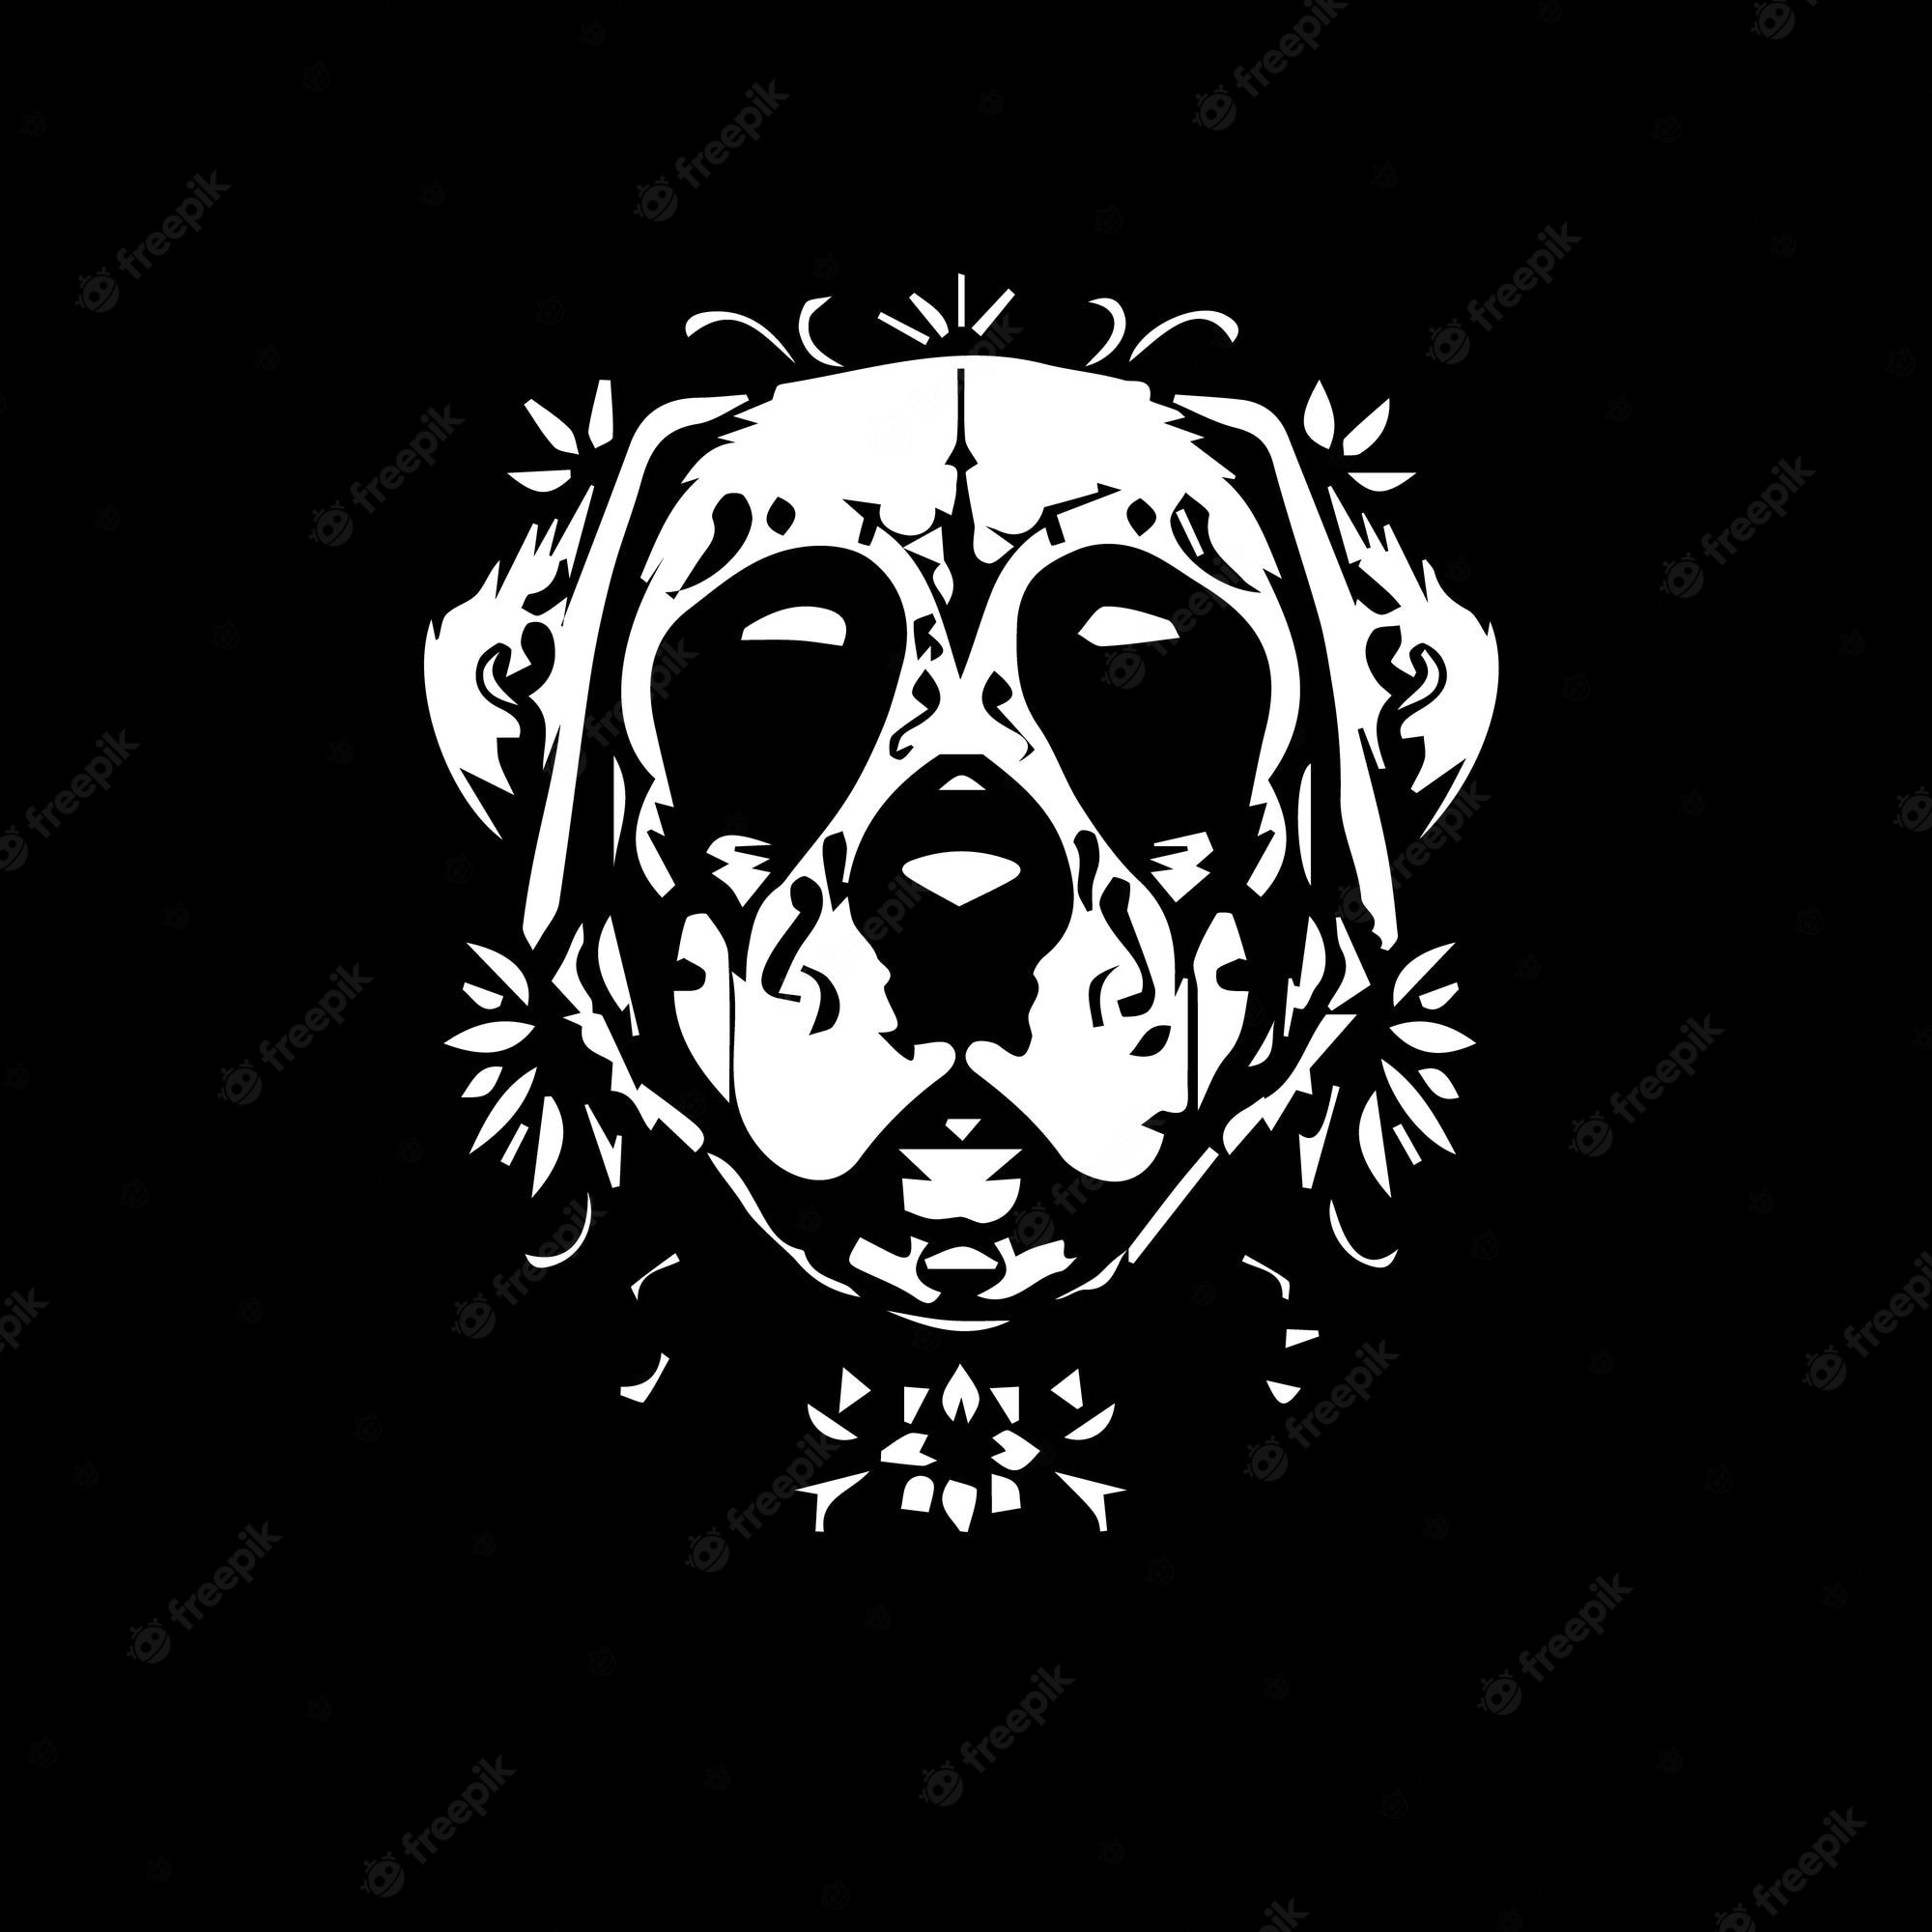 Dog Skull Drawing Image. Free Vectors, & PSD